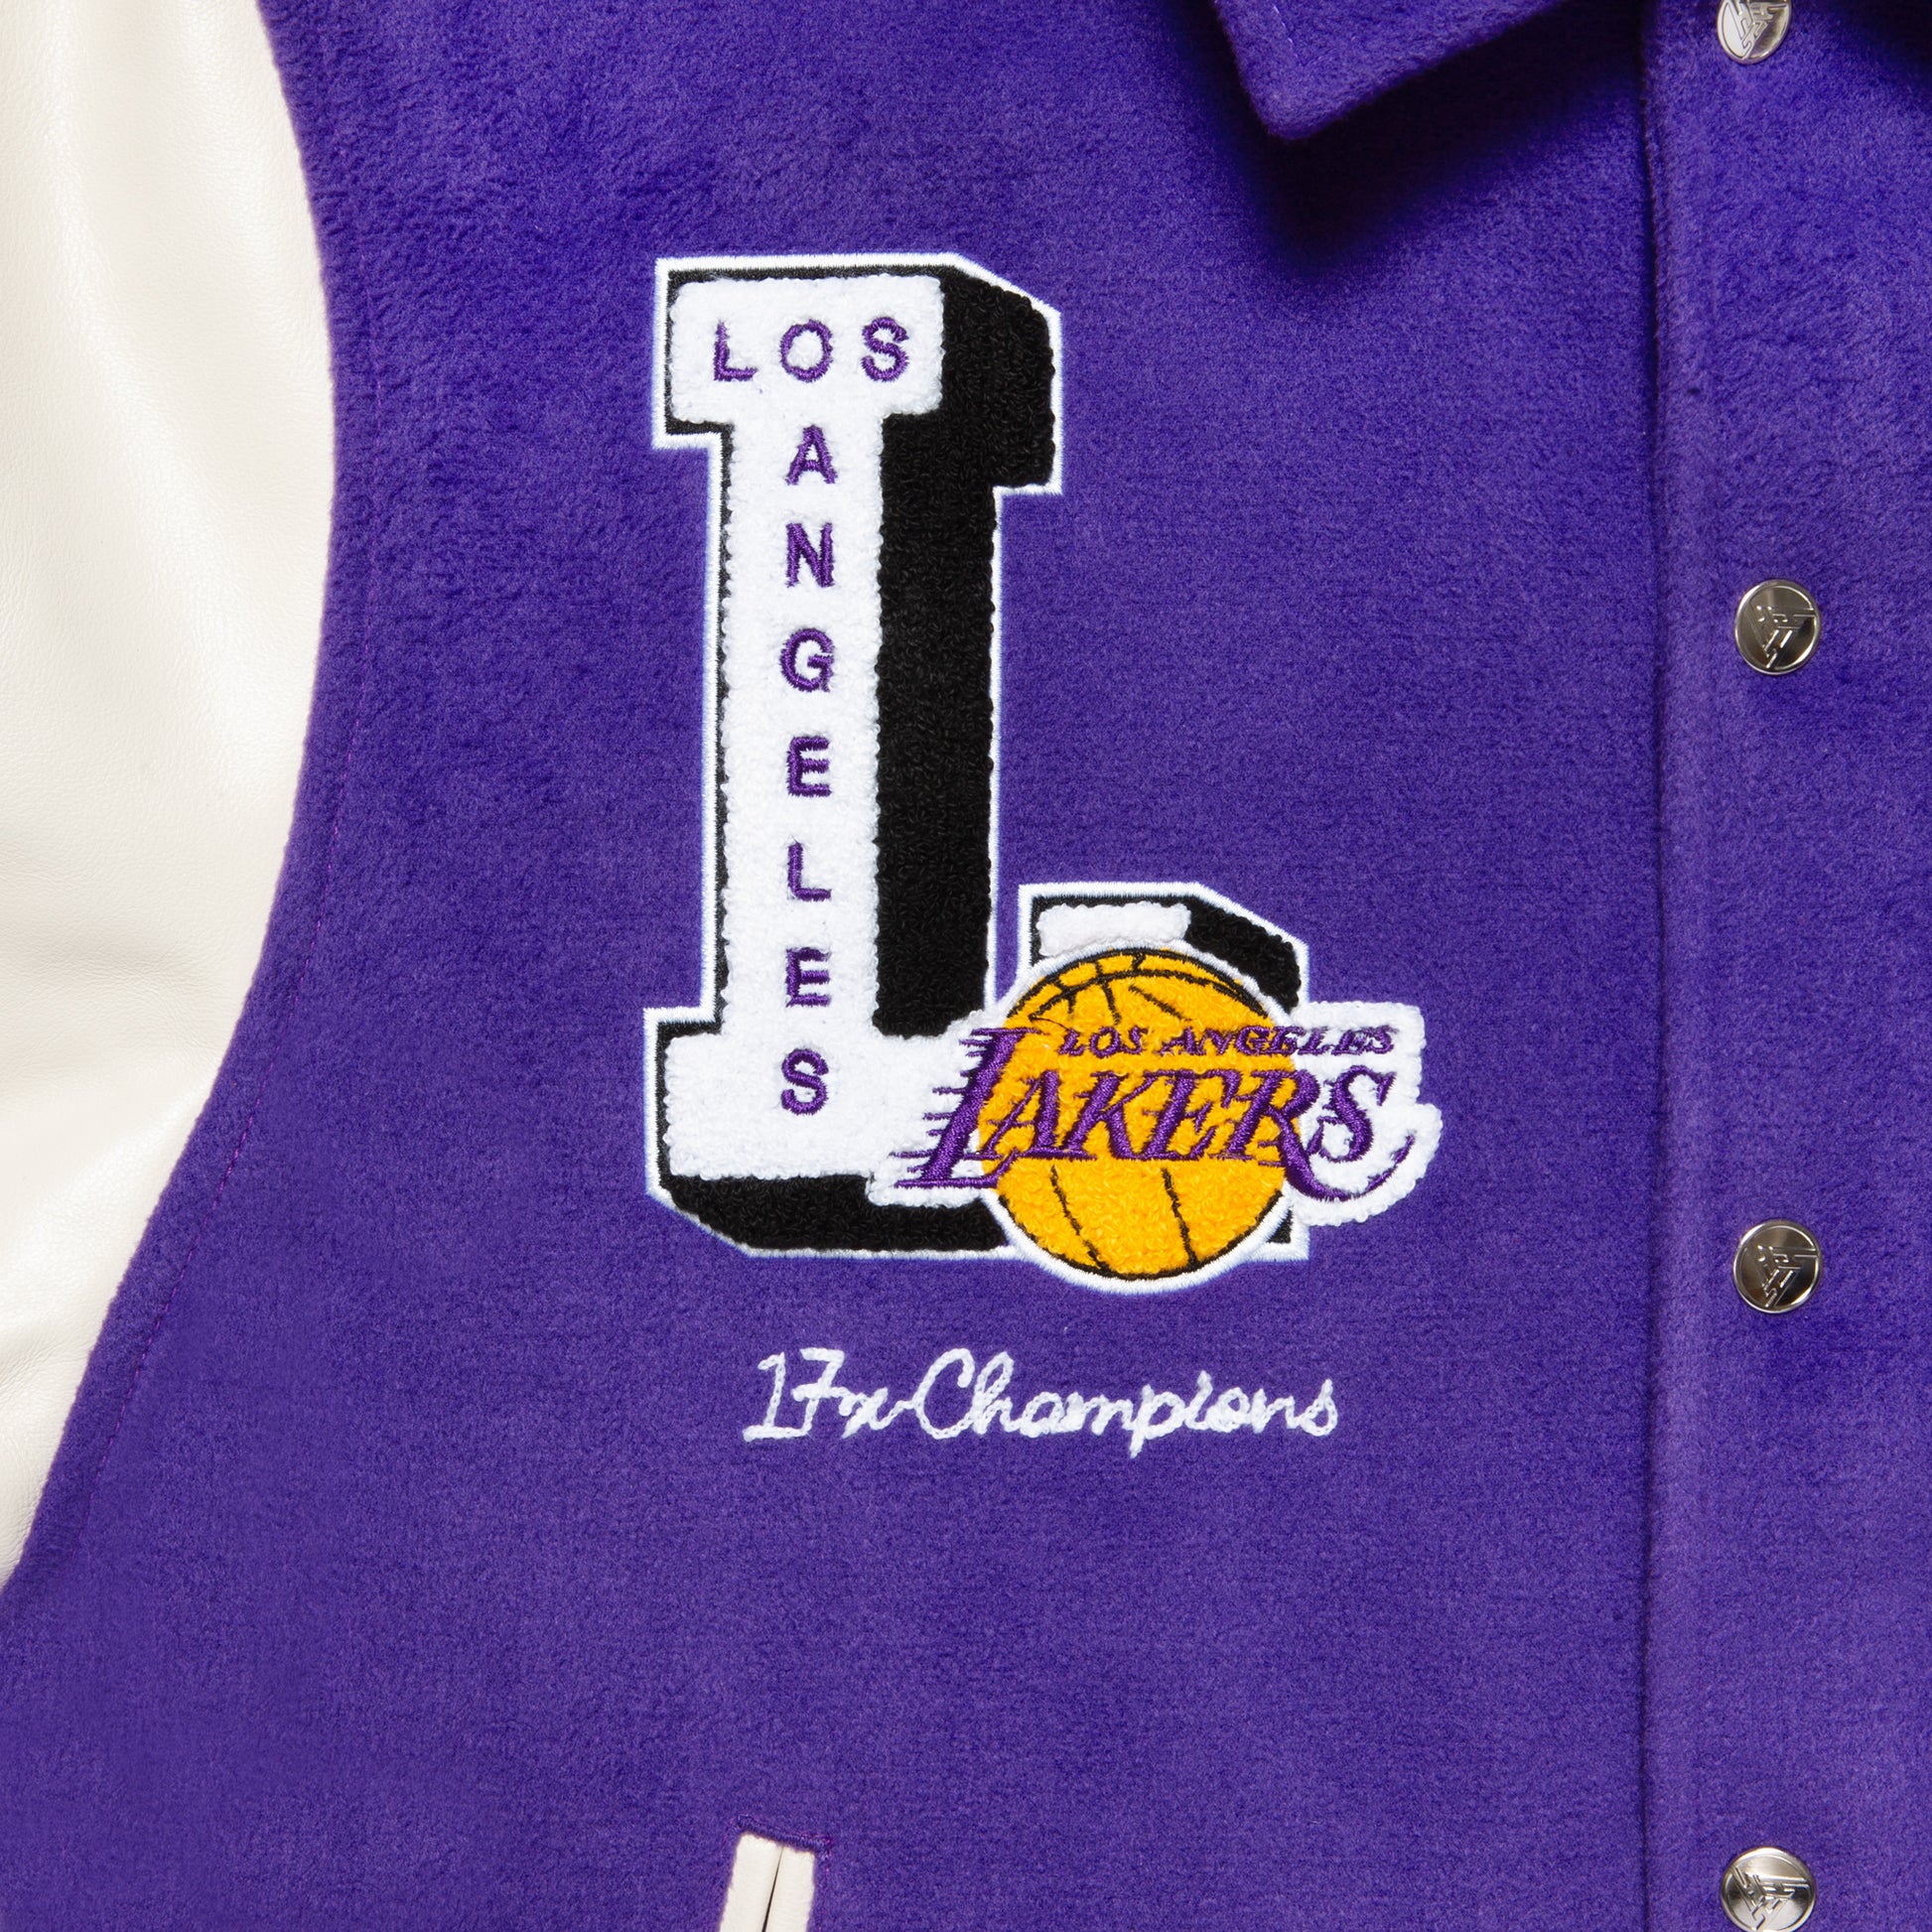 Mitchell & Ness Lakers Championship Jackets, LA Lakers Jacket